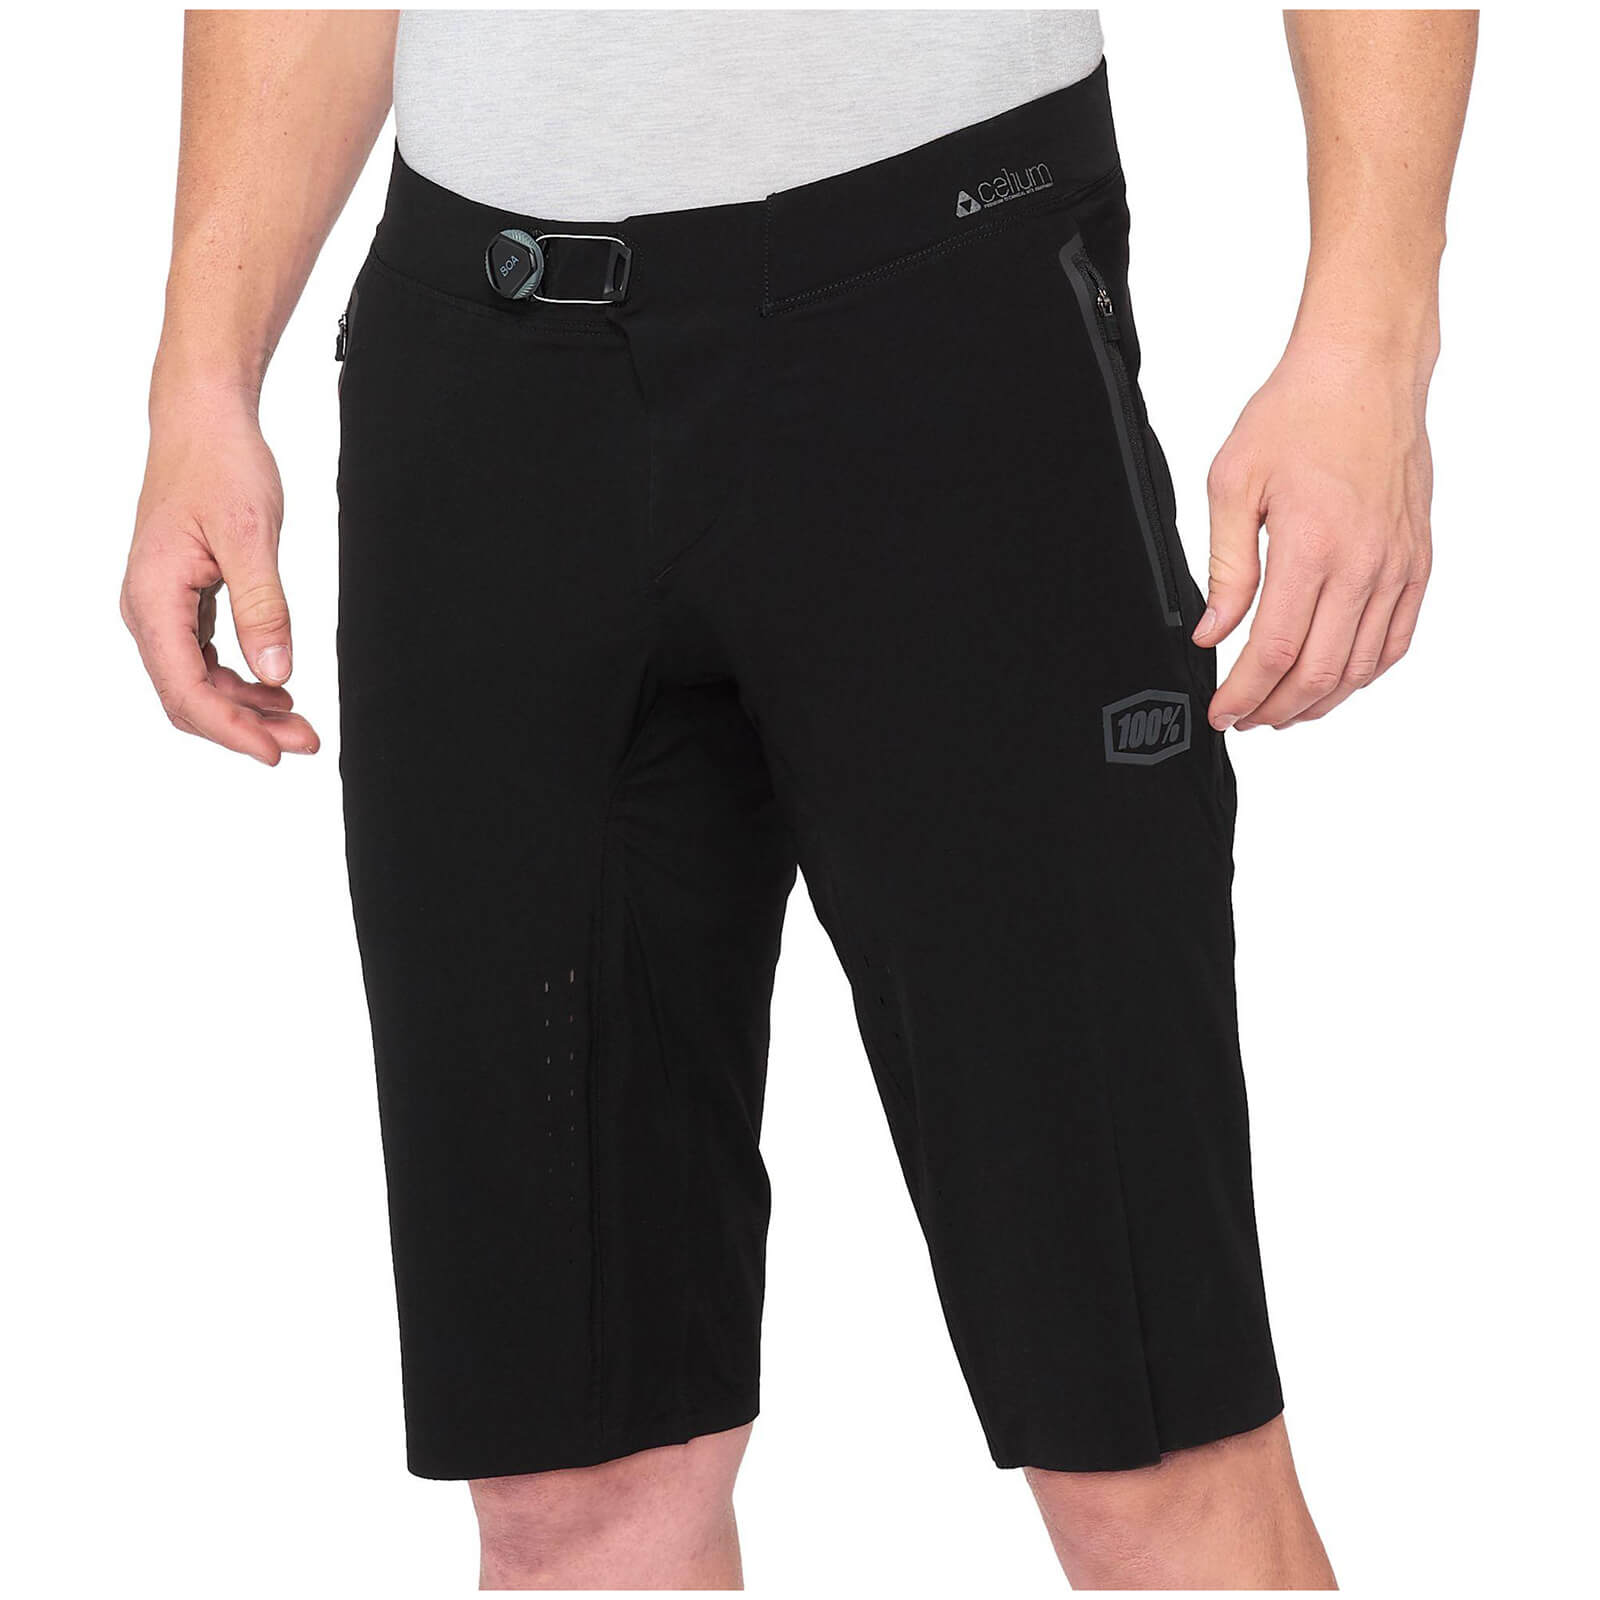 100% Celium MTB Shorts - 34 - Black